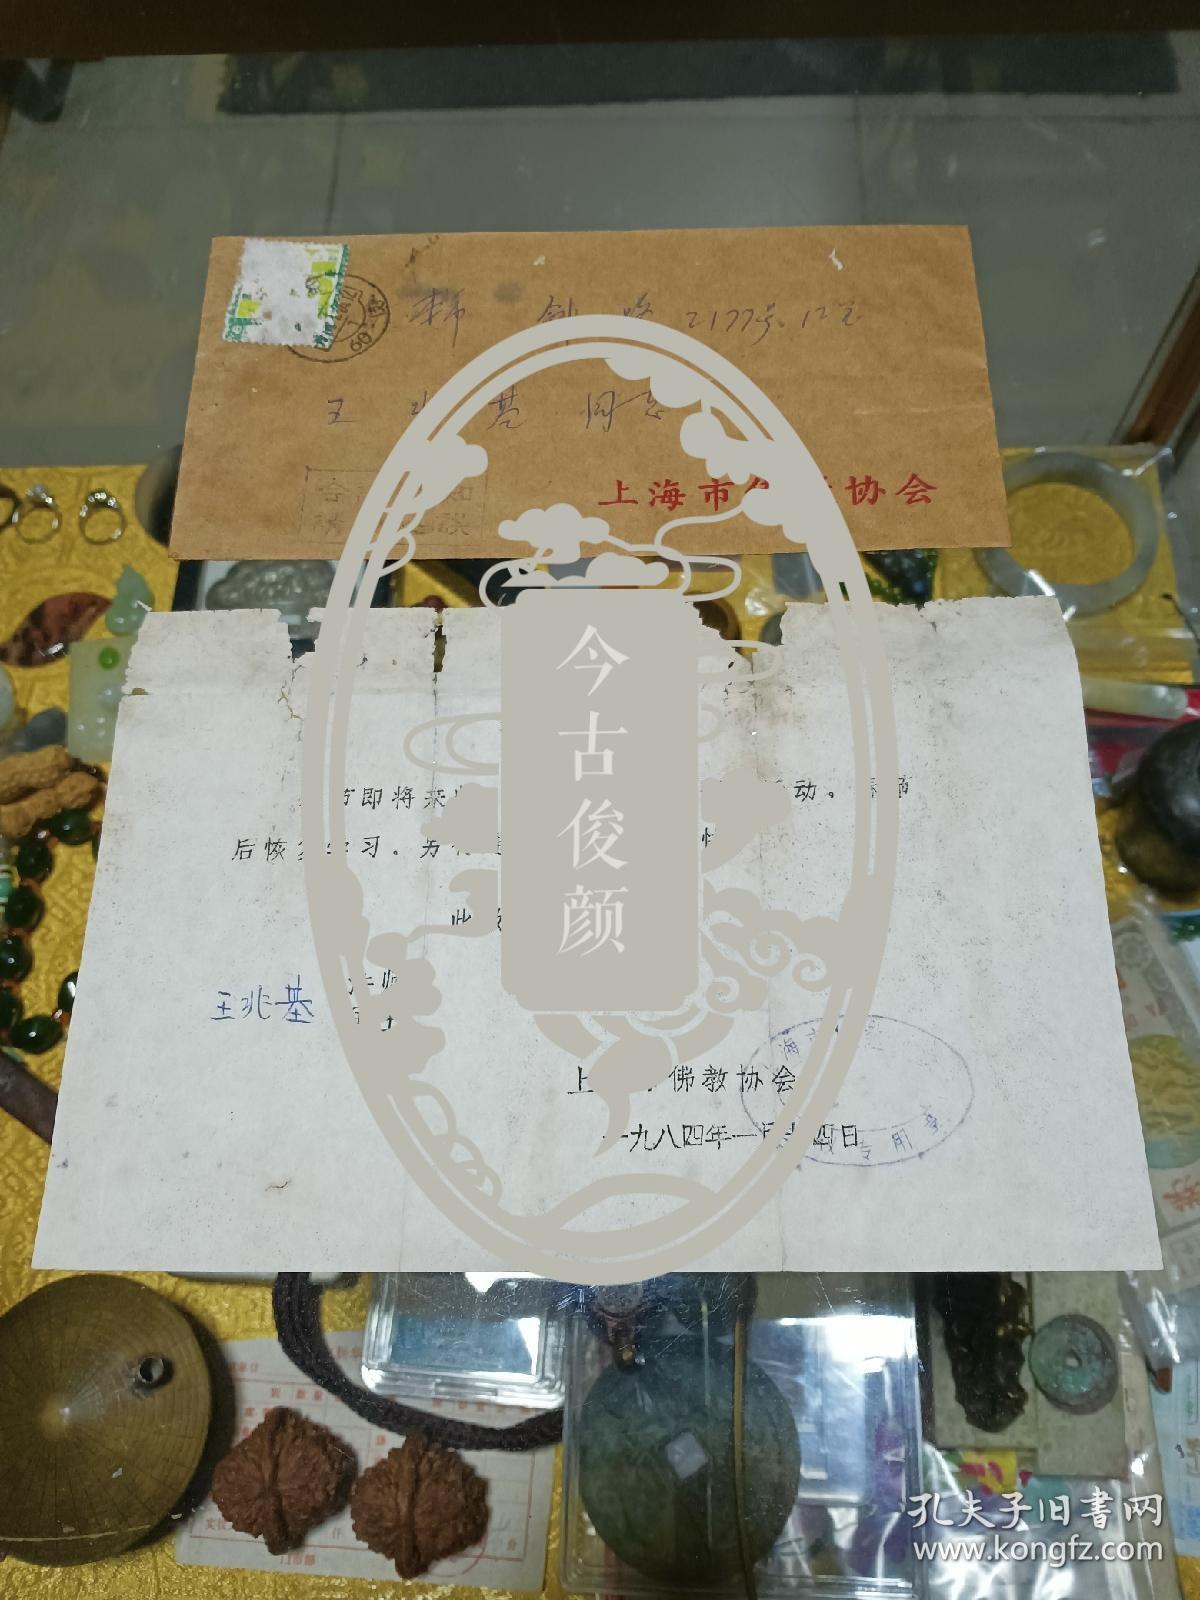 1984年 上海佛教协会 致 王兆基居士 通知信札一份（附实寄封），品可、钤印、早期文献、值得留存！